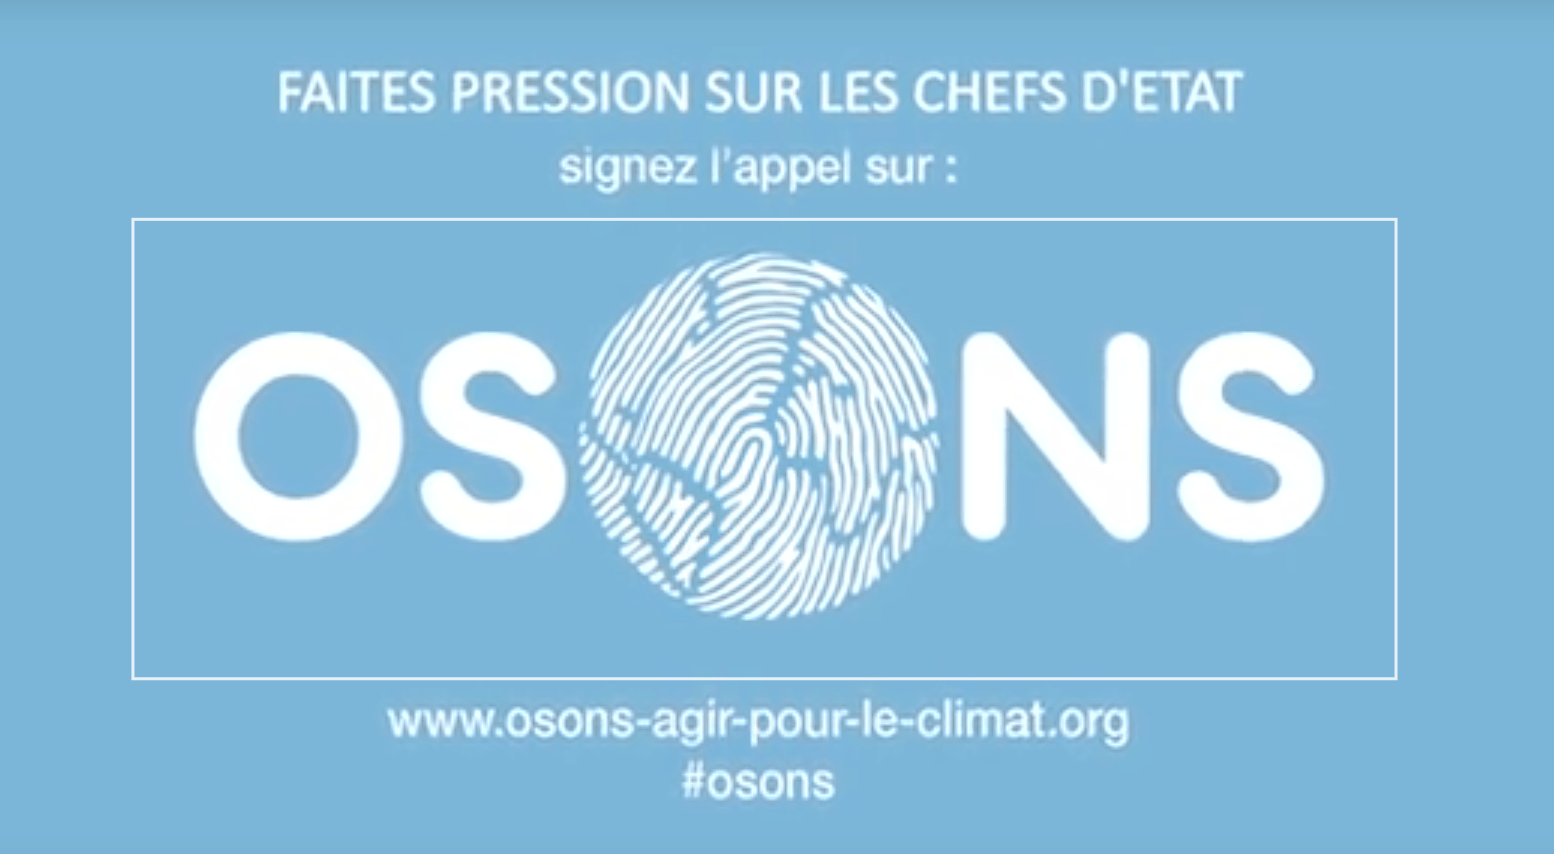 Pétition "Osons" disponible sur le site de la Fondation Nicolas Hulot